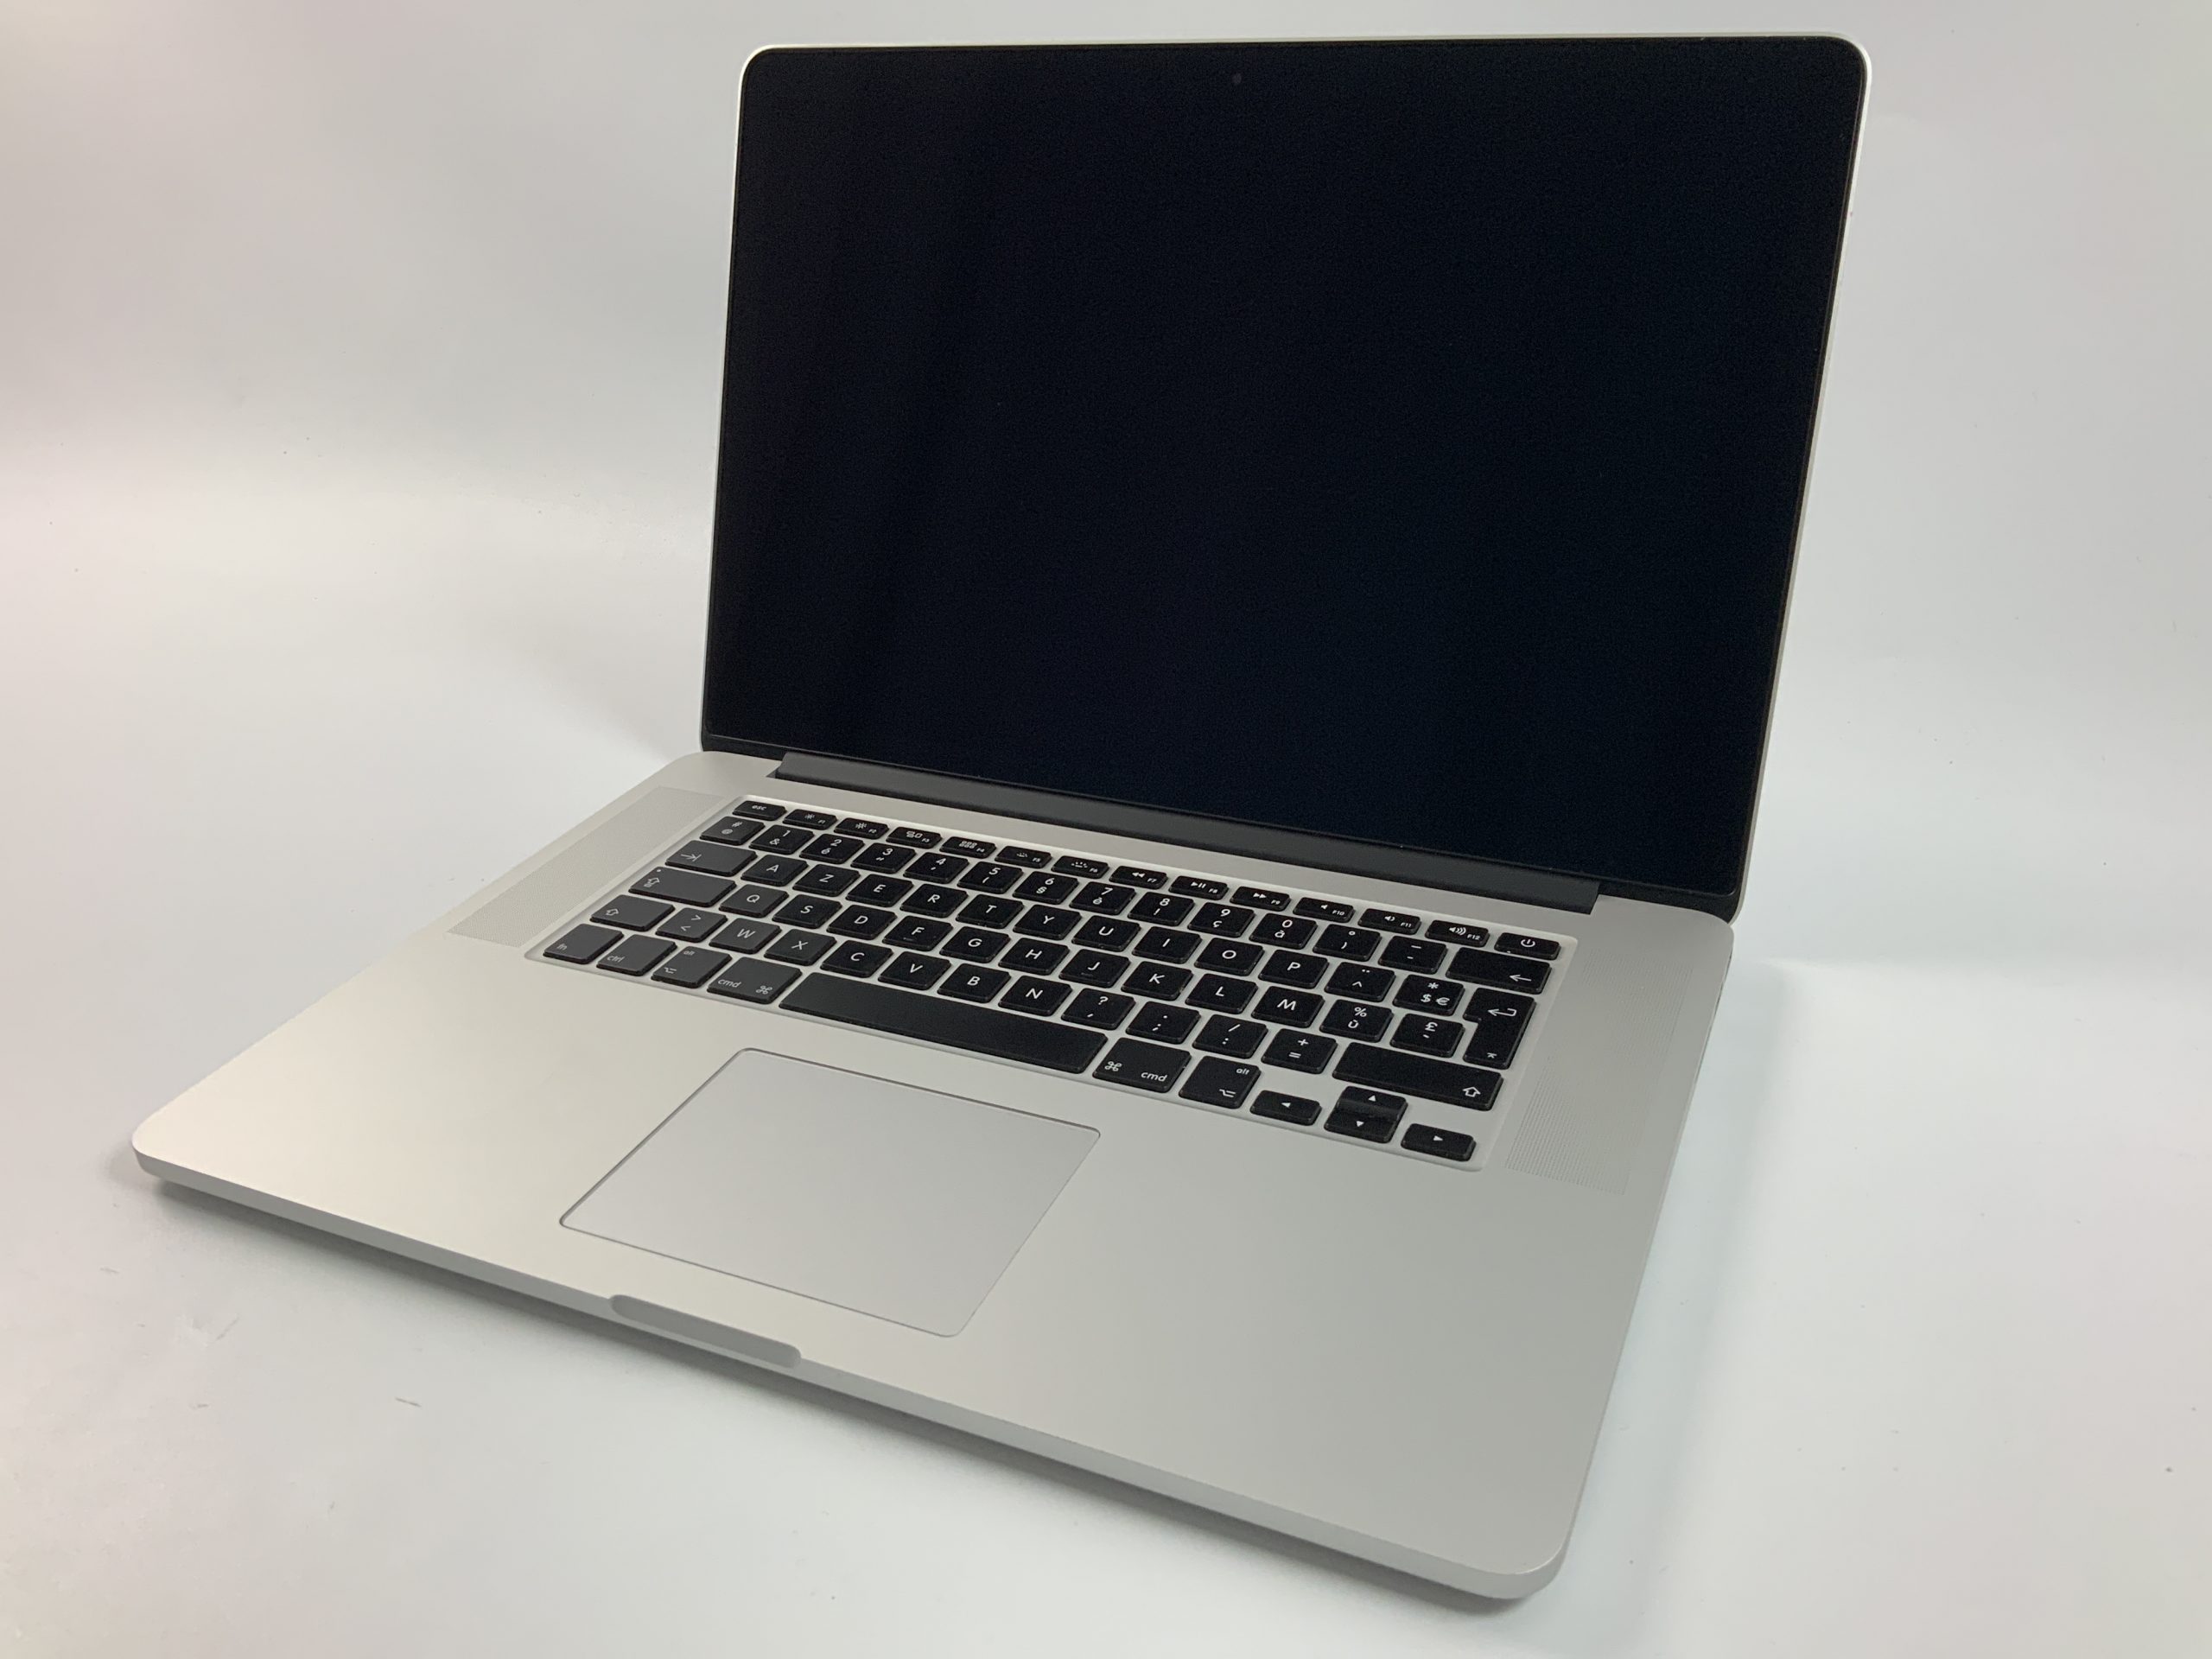 MacBook Pro Retina 15" Mid 2015 (Intel Quad-Core i7 2.8 GHz 16 GB RAM 512 GB SSD), Intel Quad-Core i7 2.8 GHz, 16 GB RAM, 512 GB SSD, Afbeelding 1